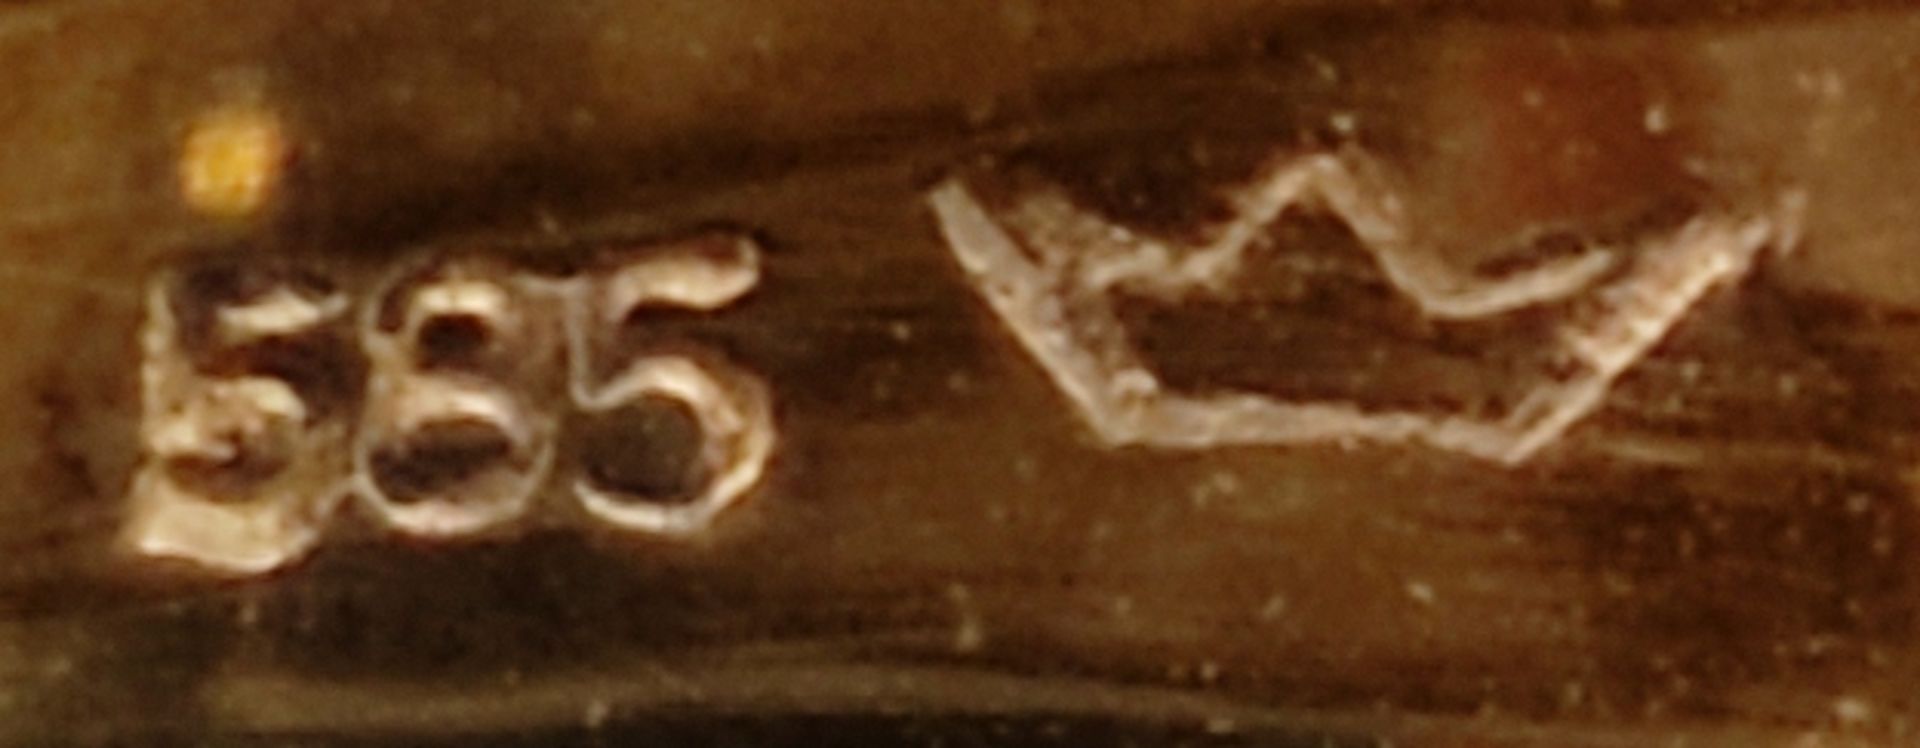 Brillant-Ring, mit 5 kleinen Brillanten, 585/14K Gelb- und Weißgold, 4,2g, Ringgröße 51 - Bild 4 aus 4